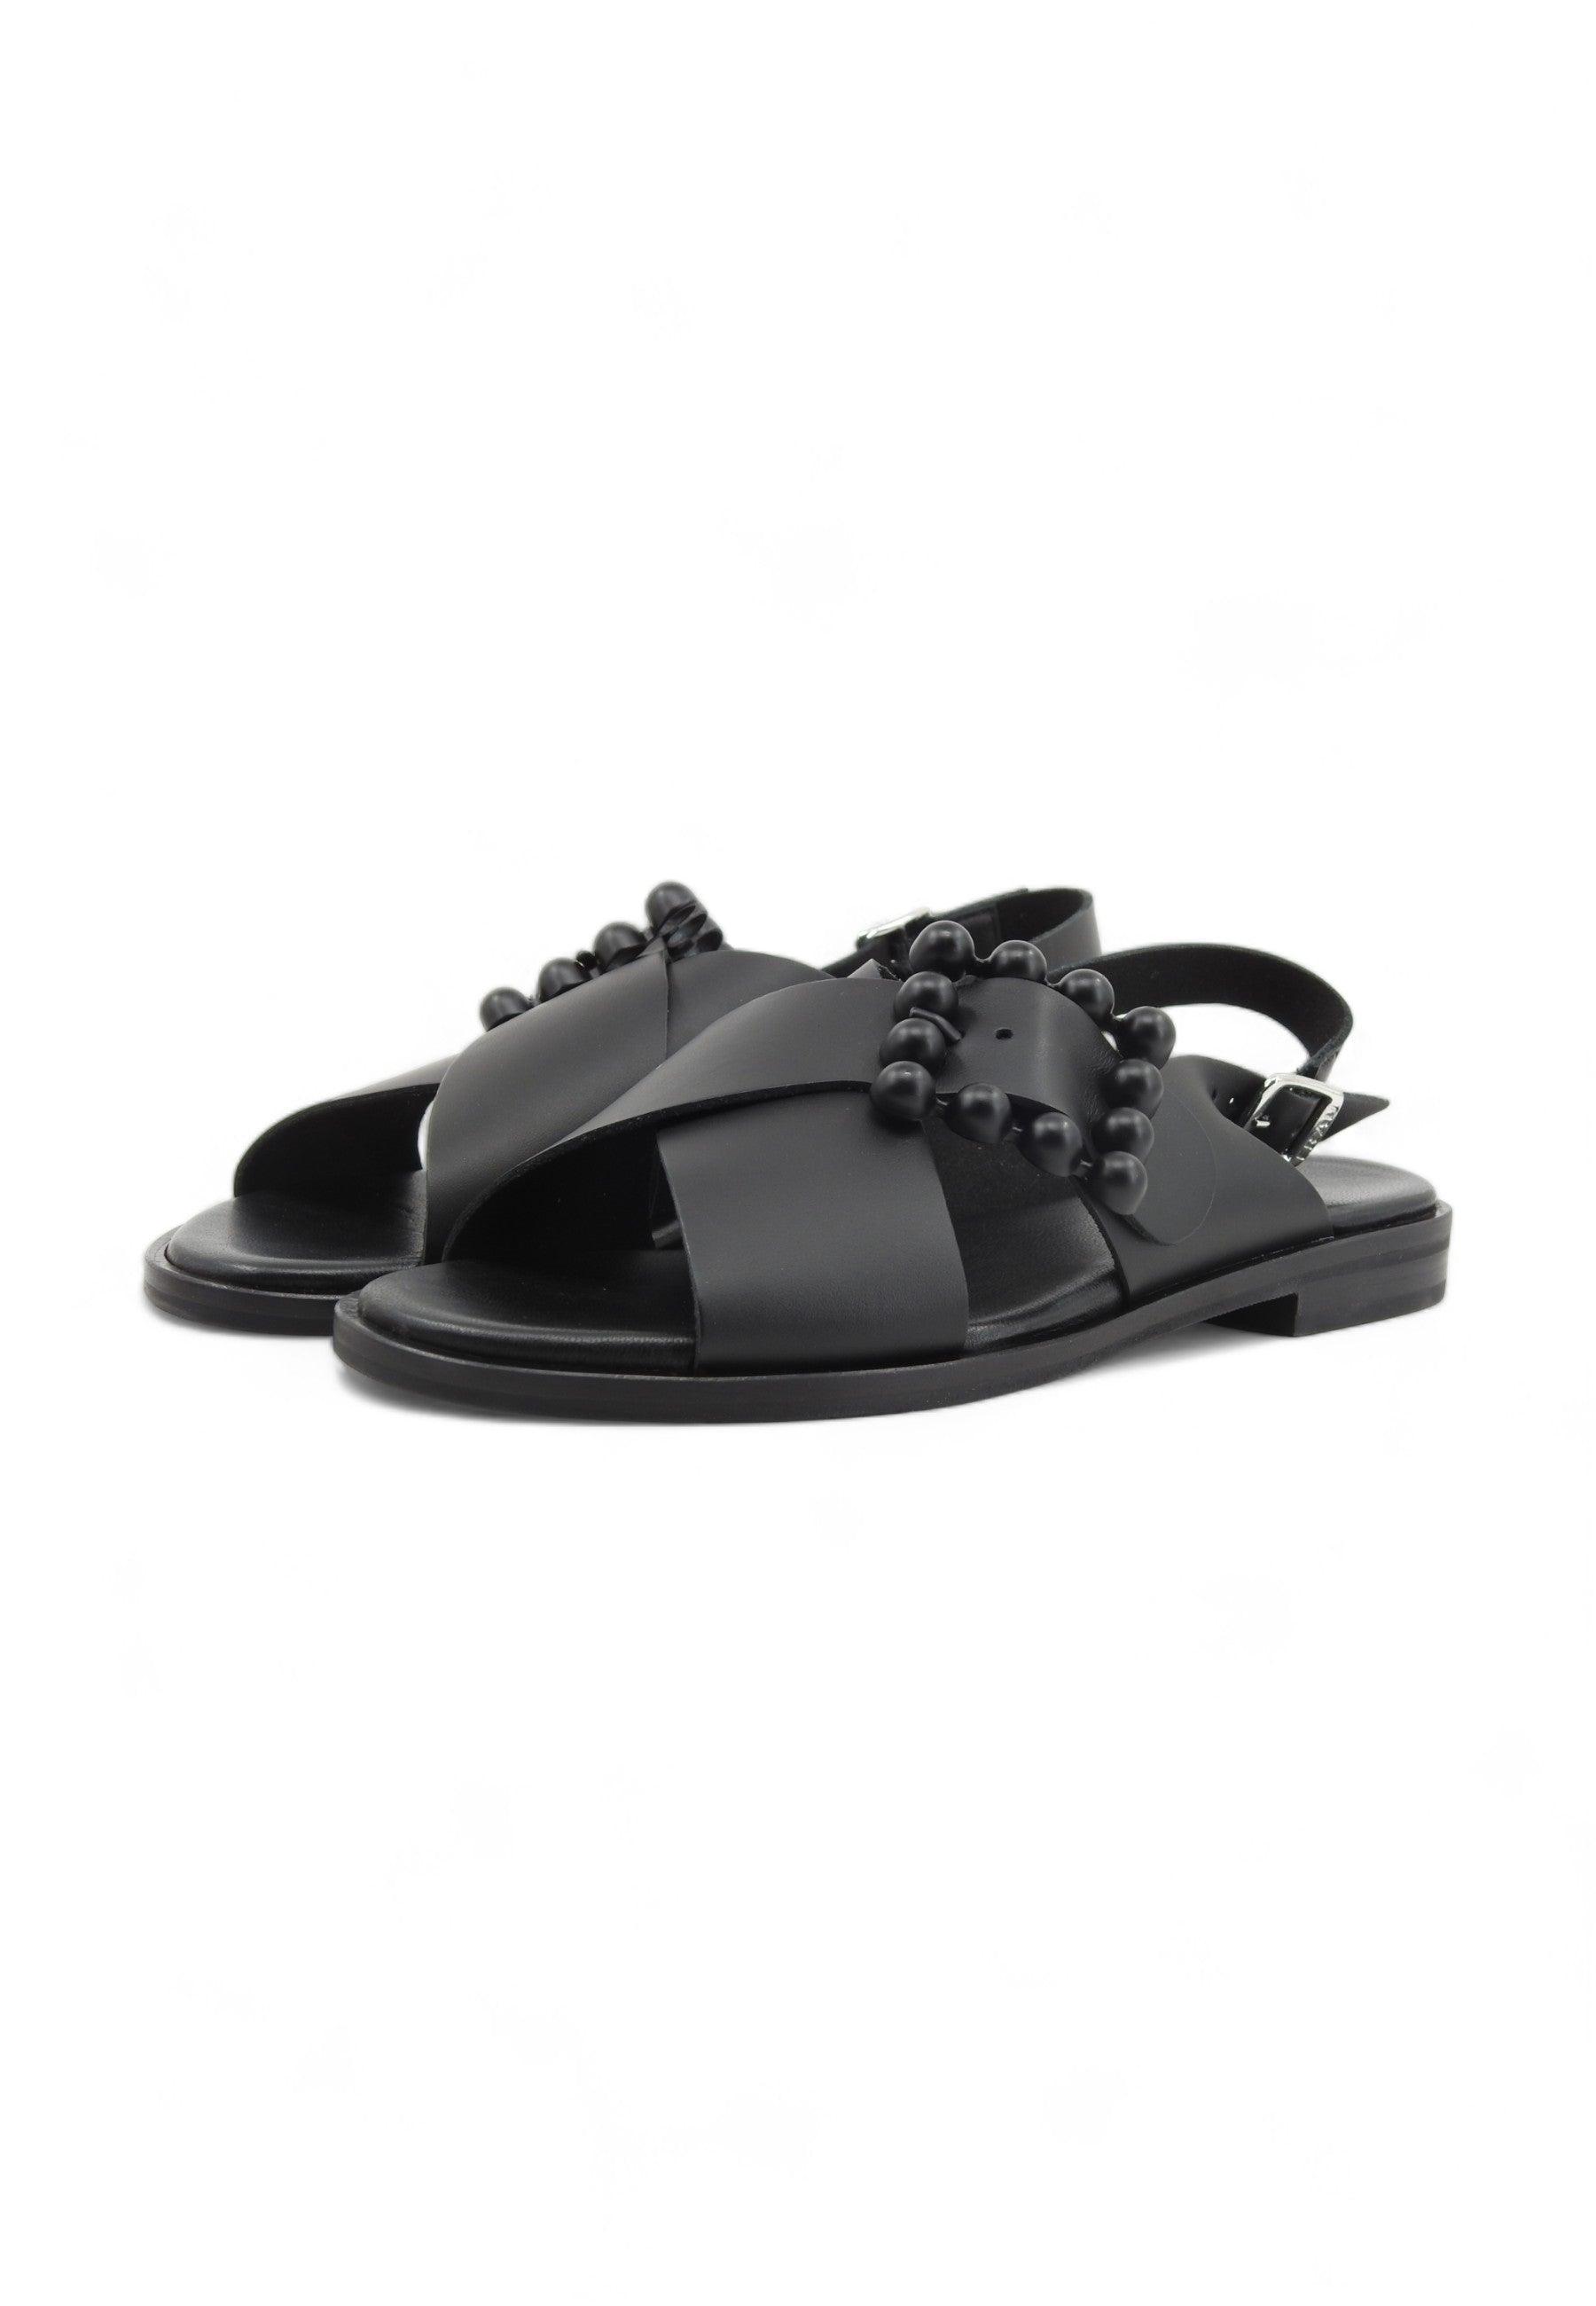 FRAU London Sandalo Donna Nero 85M9109 - Sandrini Calzature e Abbigliamento